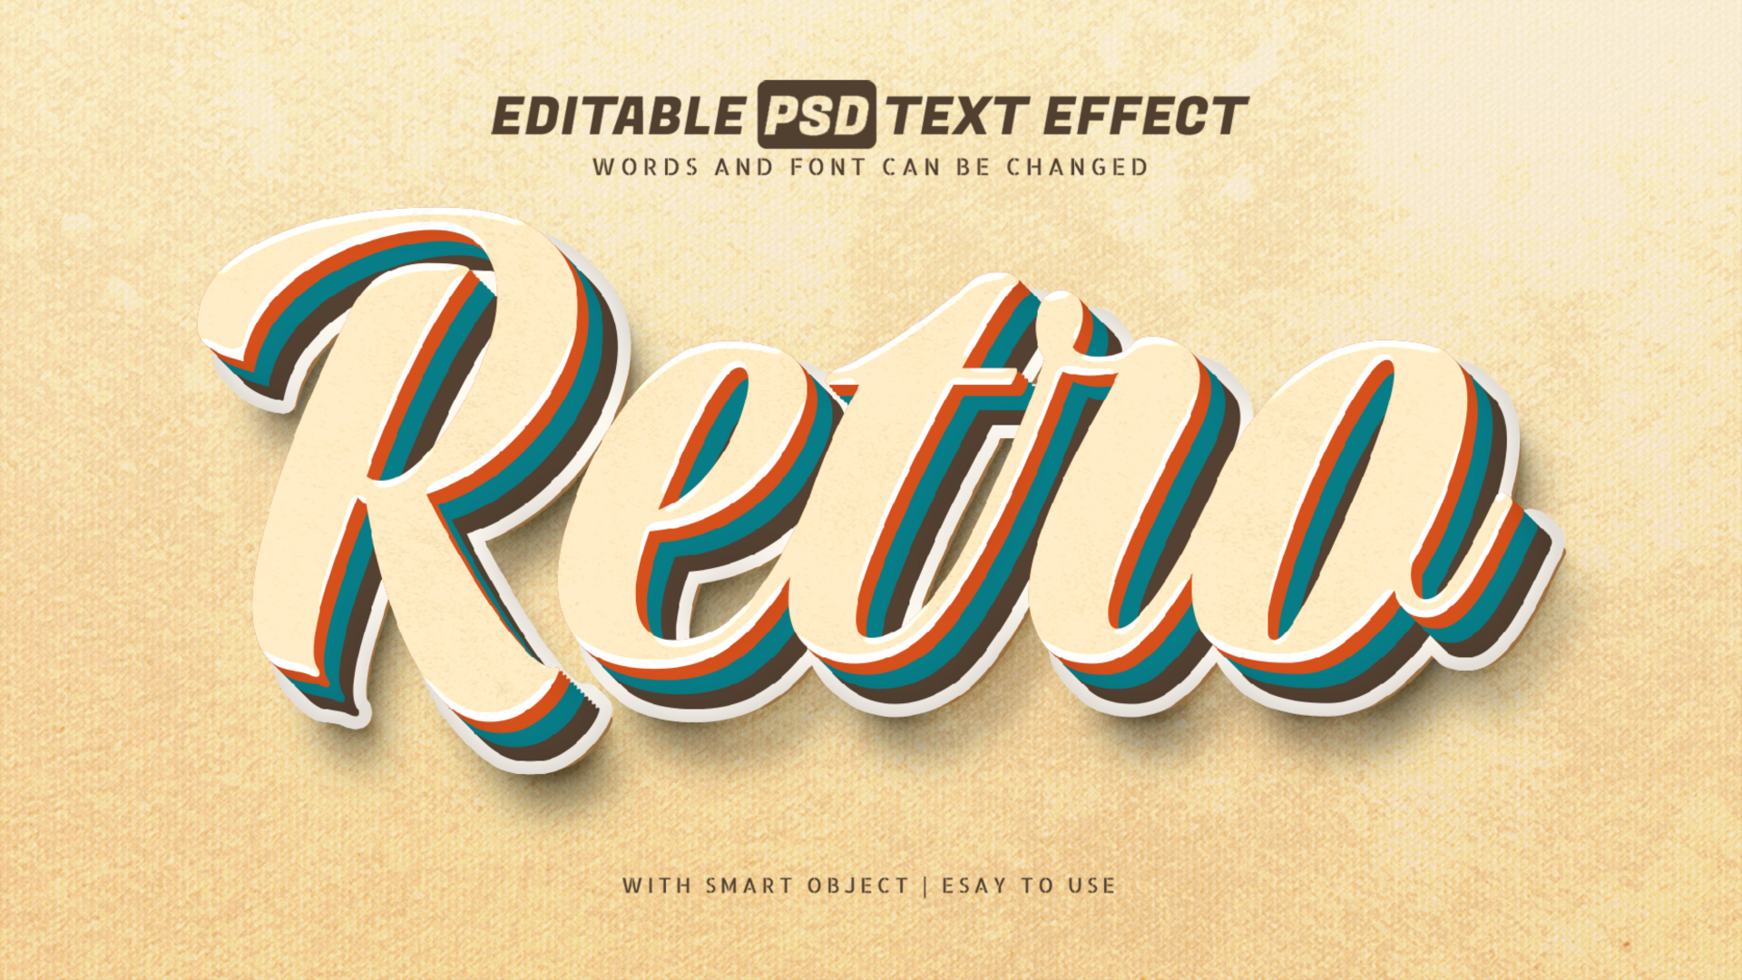 Retro vintage 3d text effect editable psd